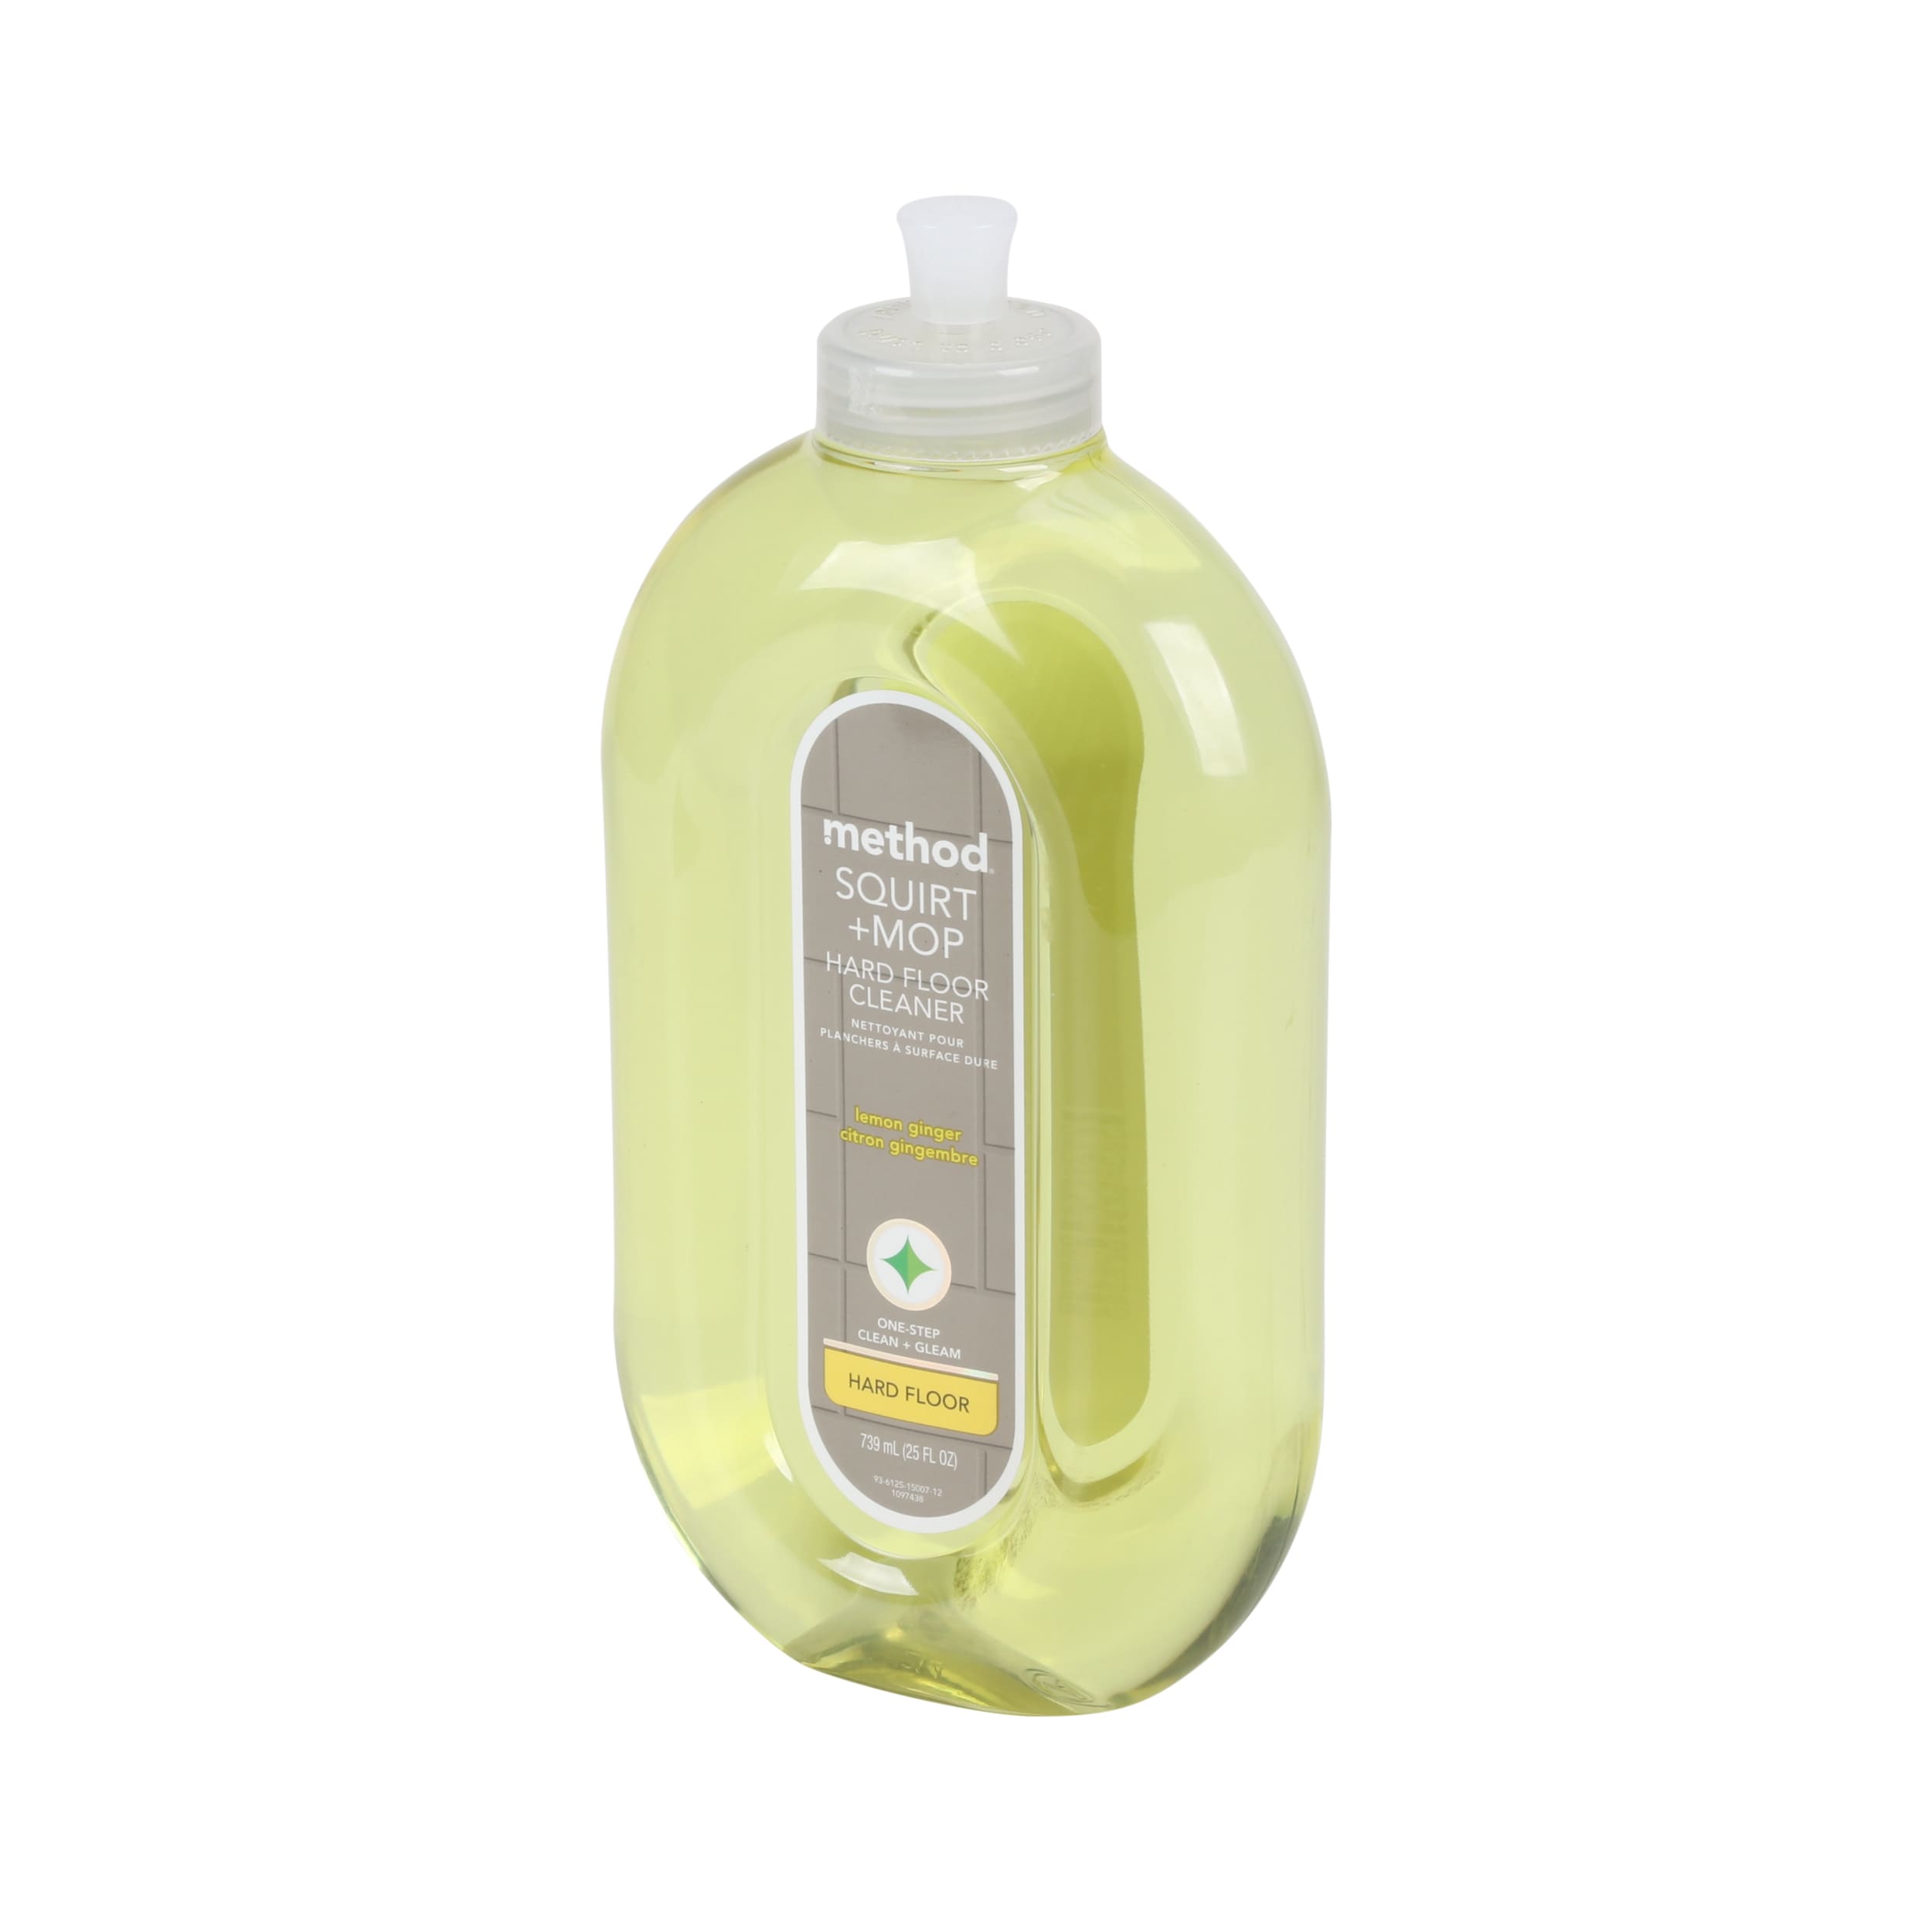 squirt + mop hard floor cleaner - lemon ginger, 25 fl oz